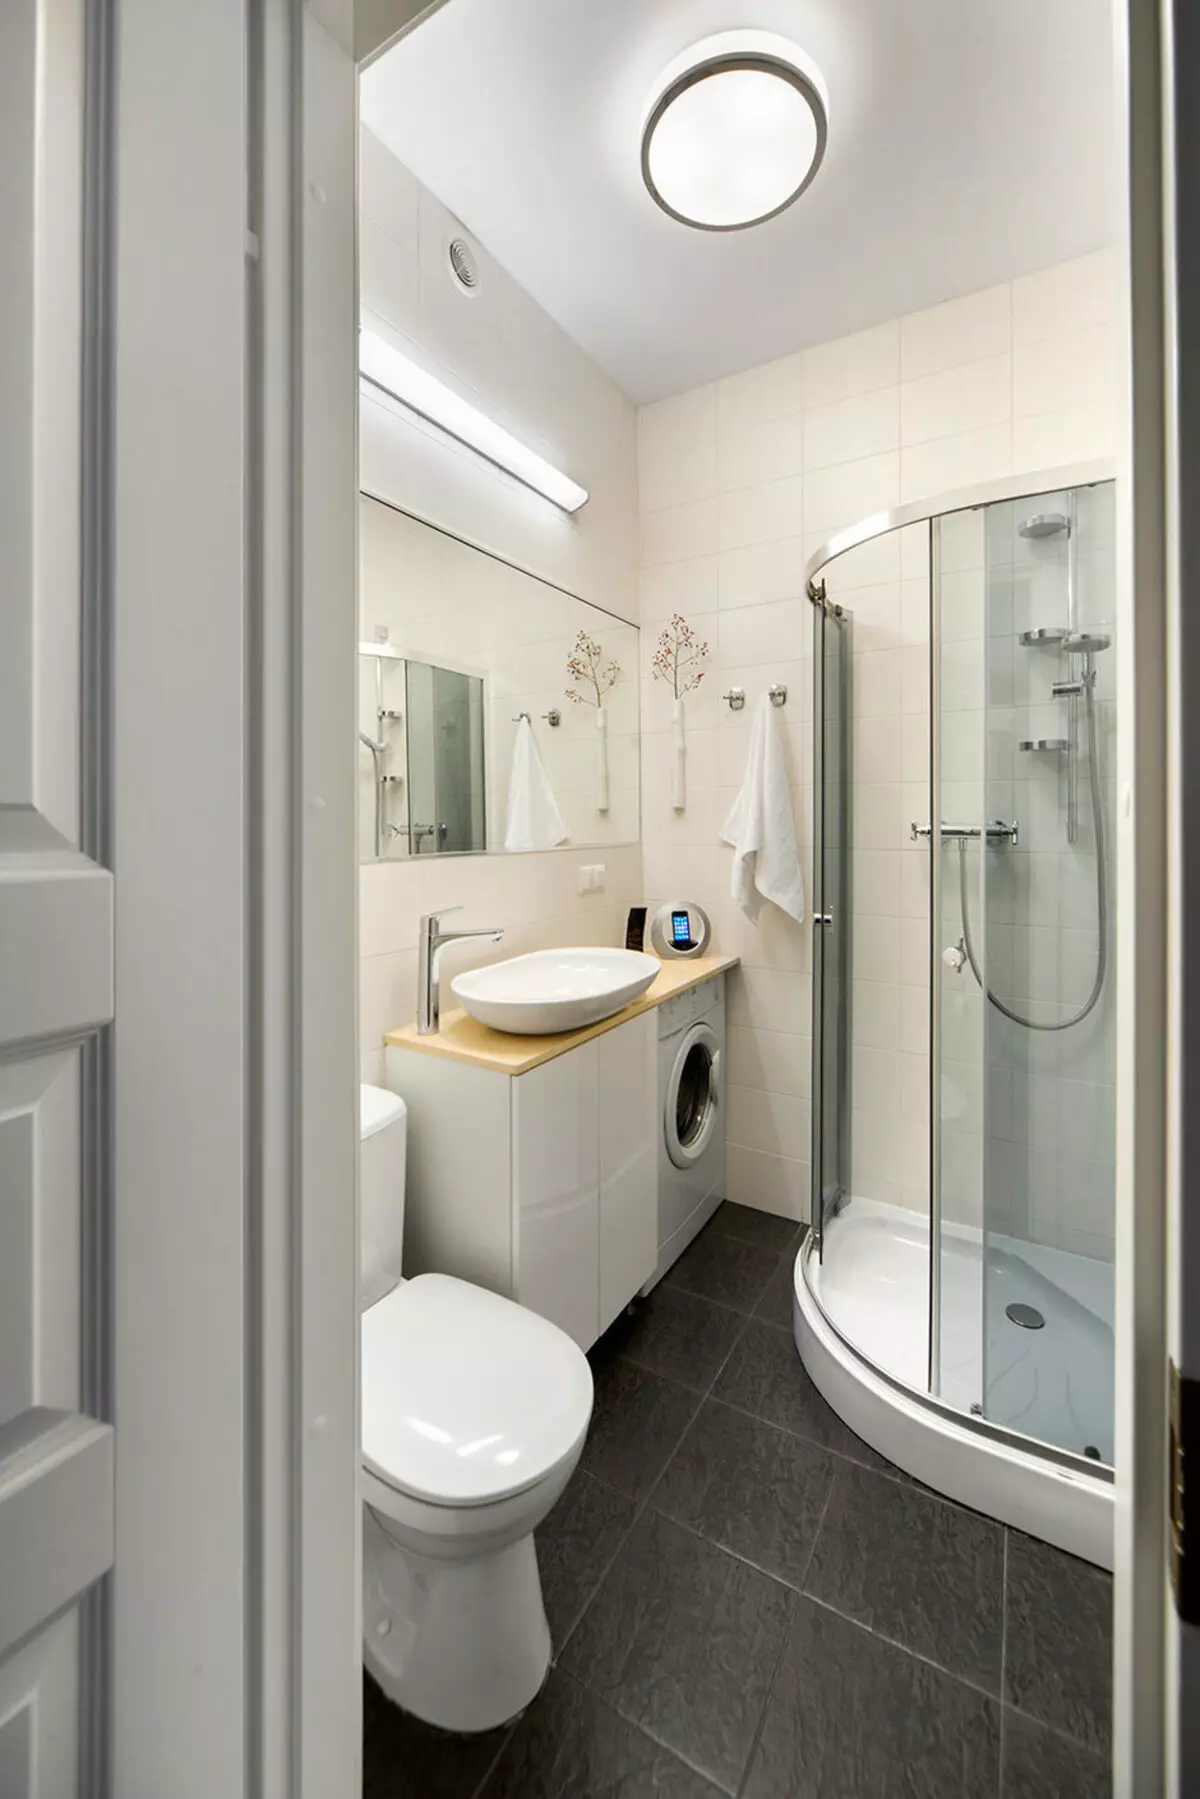 Khrushchev（75枚の写真）にある浴室を組み合わせた浴室：トイレと組み合わせた小さなお風呂のデザイン。部屋はどんなサイズですか？洗濯機が付いているバスルームのインテリアデザインのアイデア 10081_50